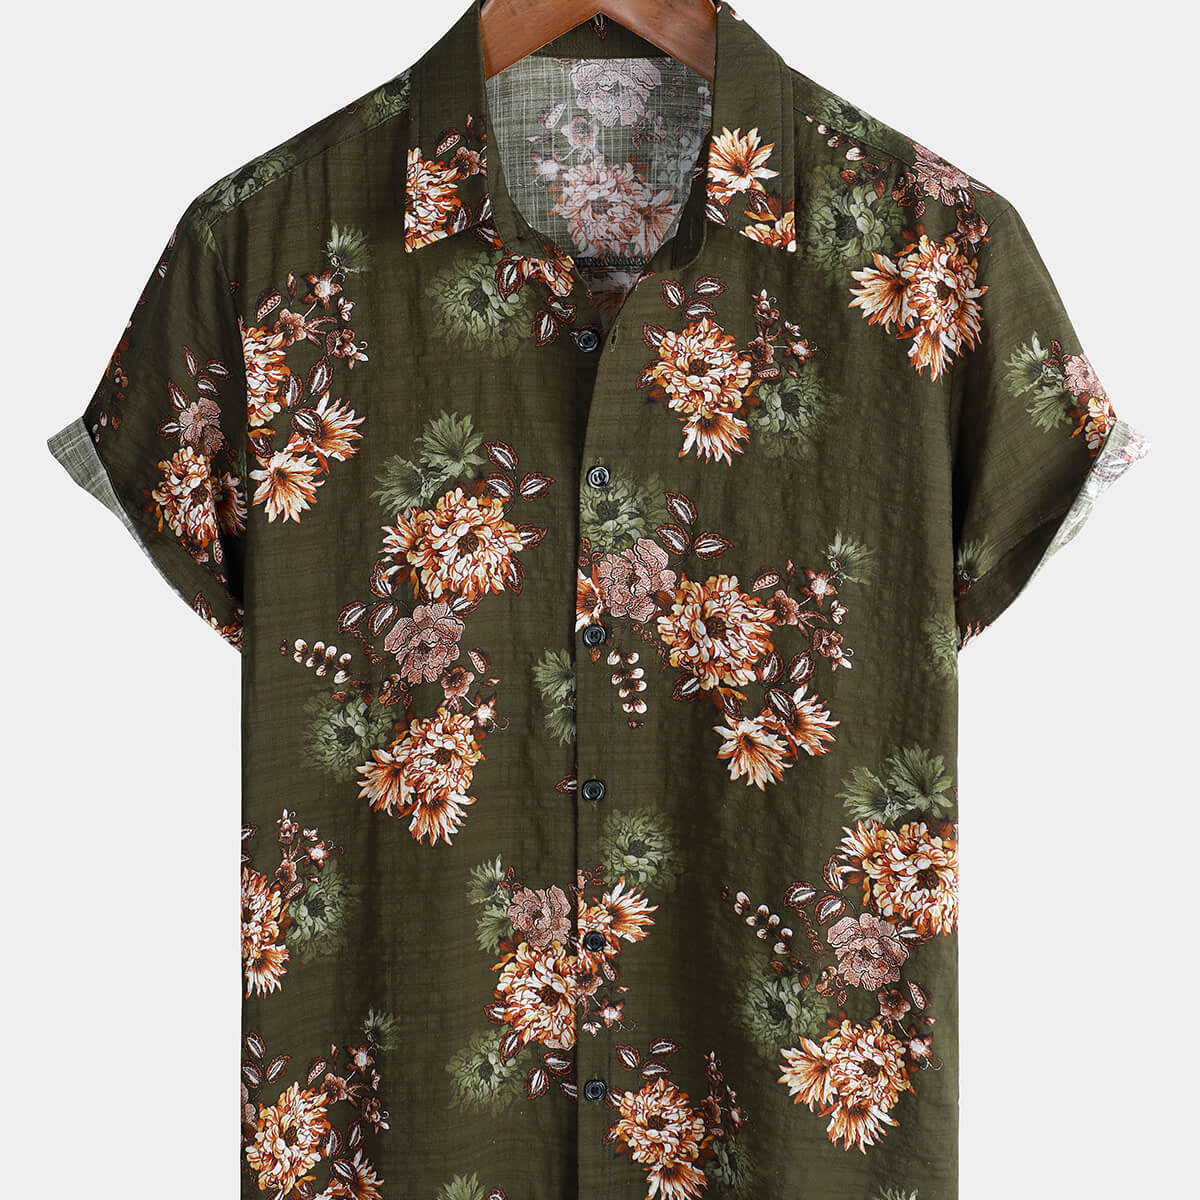 Men's Vintage Floral Hawaiian Print Beach Hoilday Resort Button Up Short Sleeve Shirt